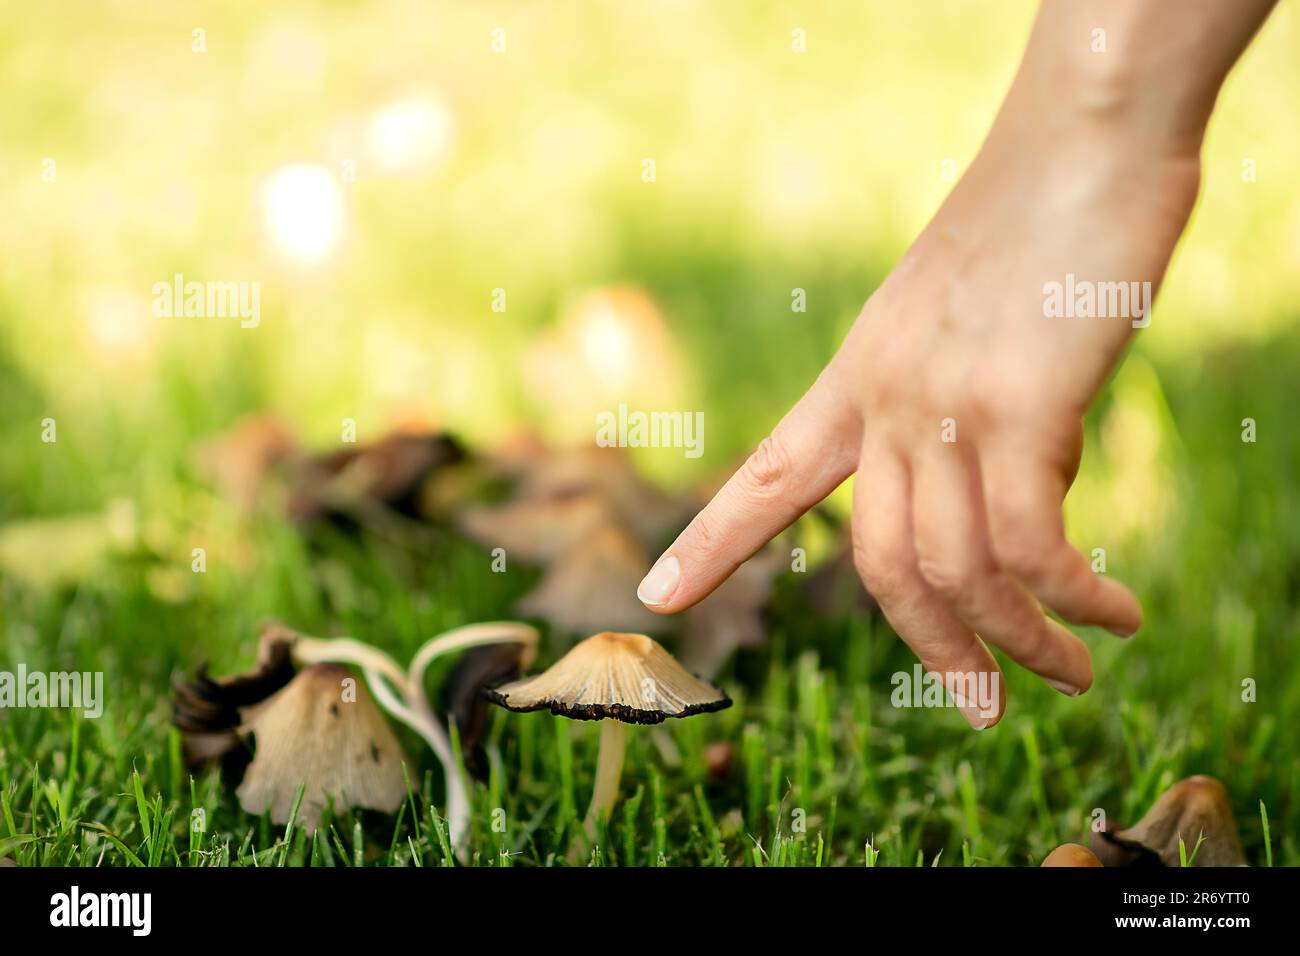 parco in primavera, dopo la pioggia, una giovane donna bianca, camminando, ha visto funghi nell'erba verde, si è piegata a toccare il cappuccio di fungo con il dito Foto Stock